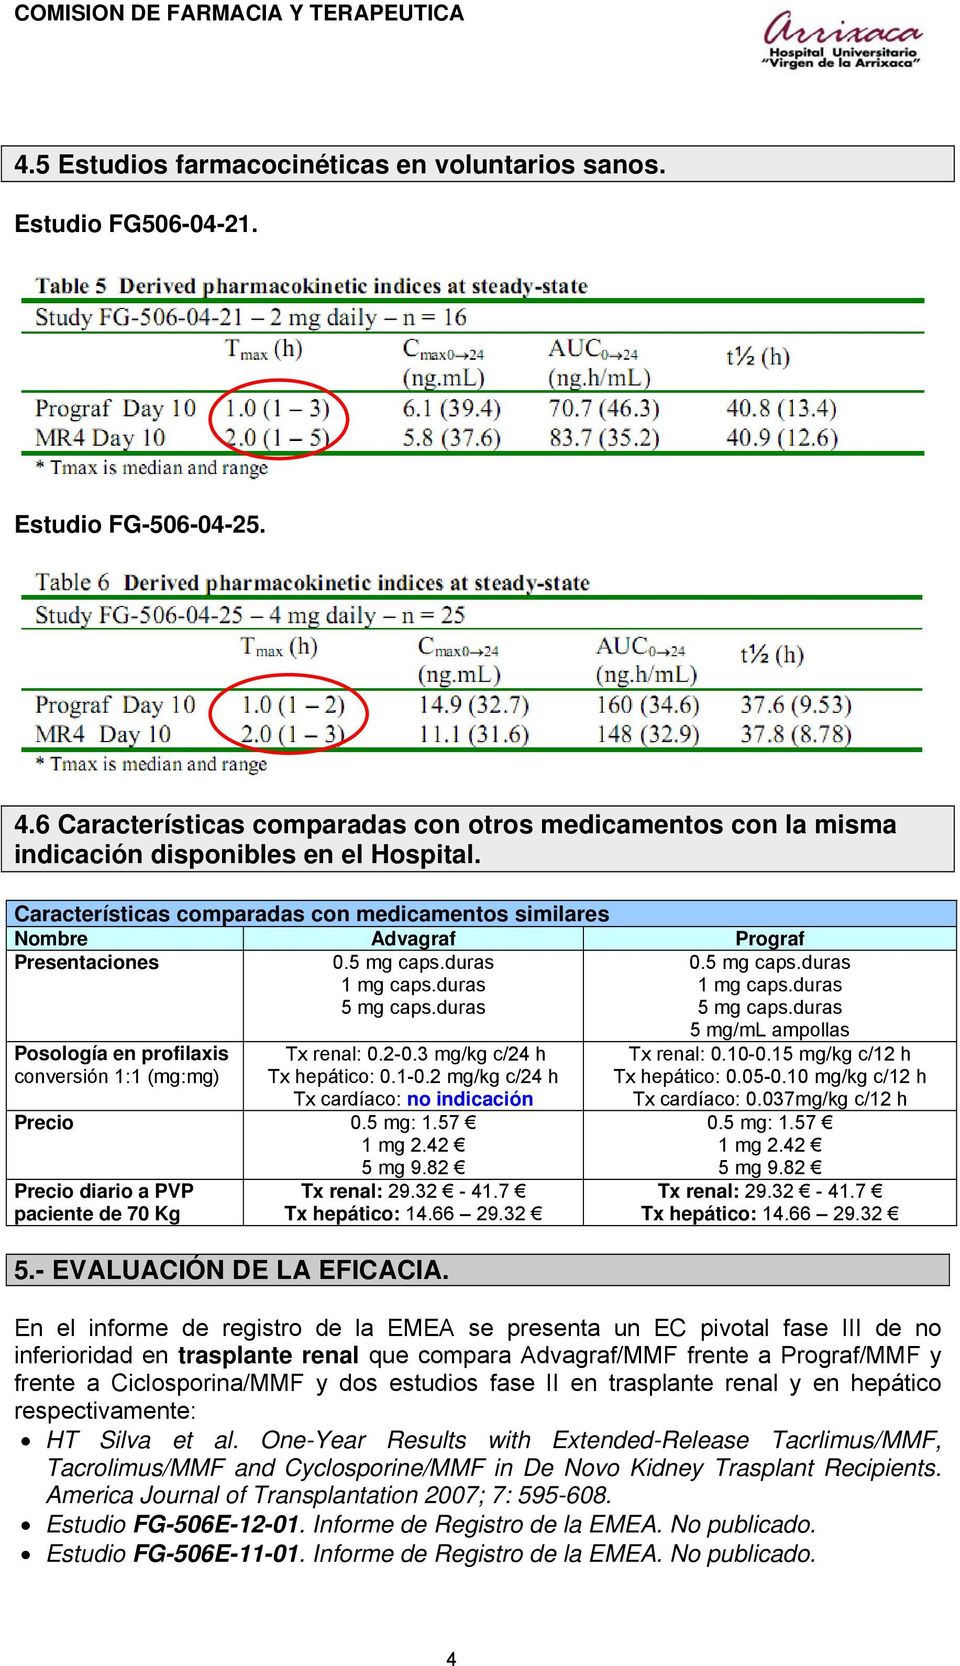 duras 0.5 mg caps.duras 1 mg caps.duras 5 mg caps.duras Posología en profilaxis conversión 1:1 (mg:mg) Tx renal: 0.2-0.3 mg/kg c/24 h Tx hepático: 0.1-0.